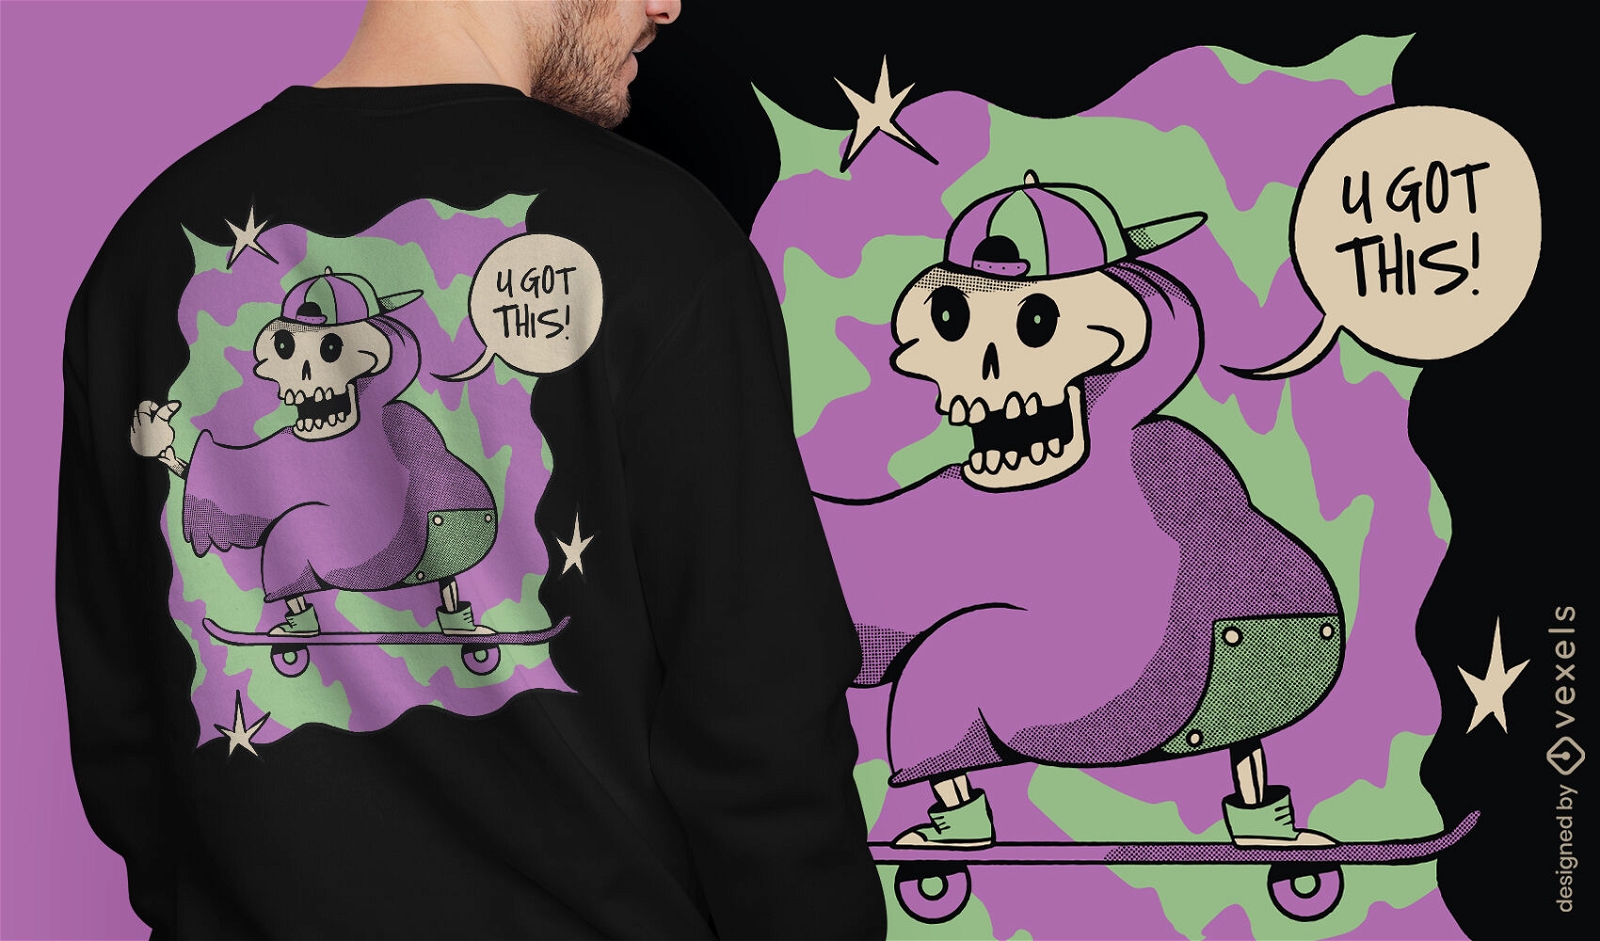 Dise?o de camiseta de skate de esqueleto motivacional.